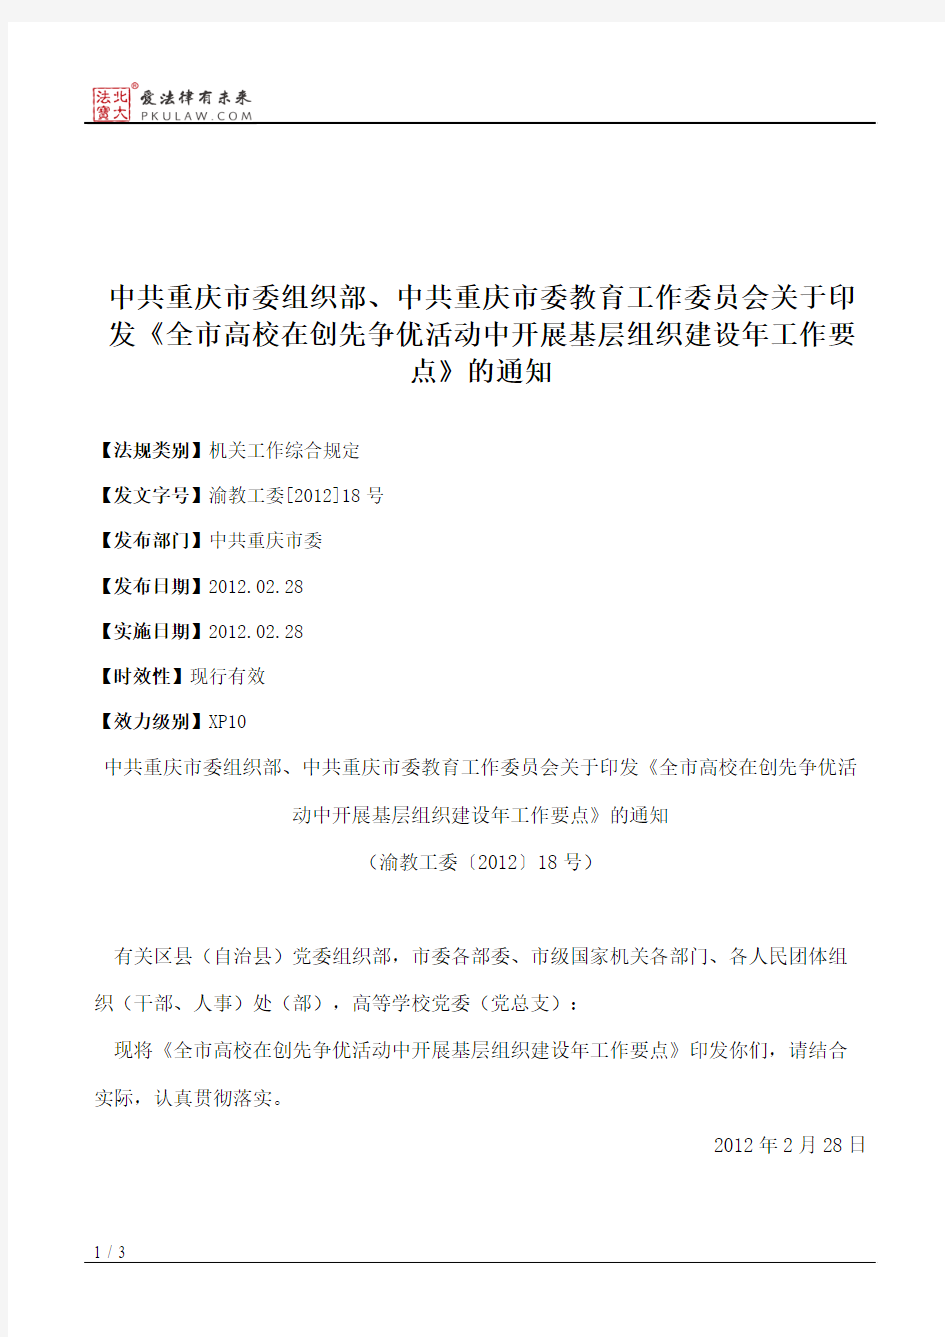 中共重庆市委组织部、中共重庆市委教育工作委员会关于印发《全市